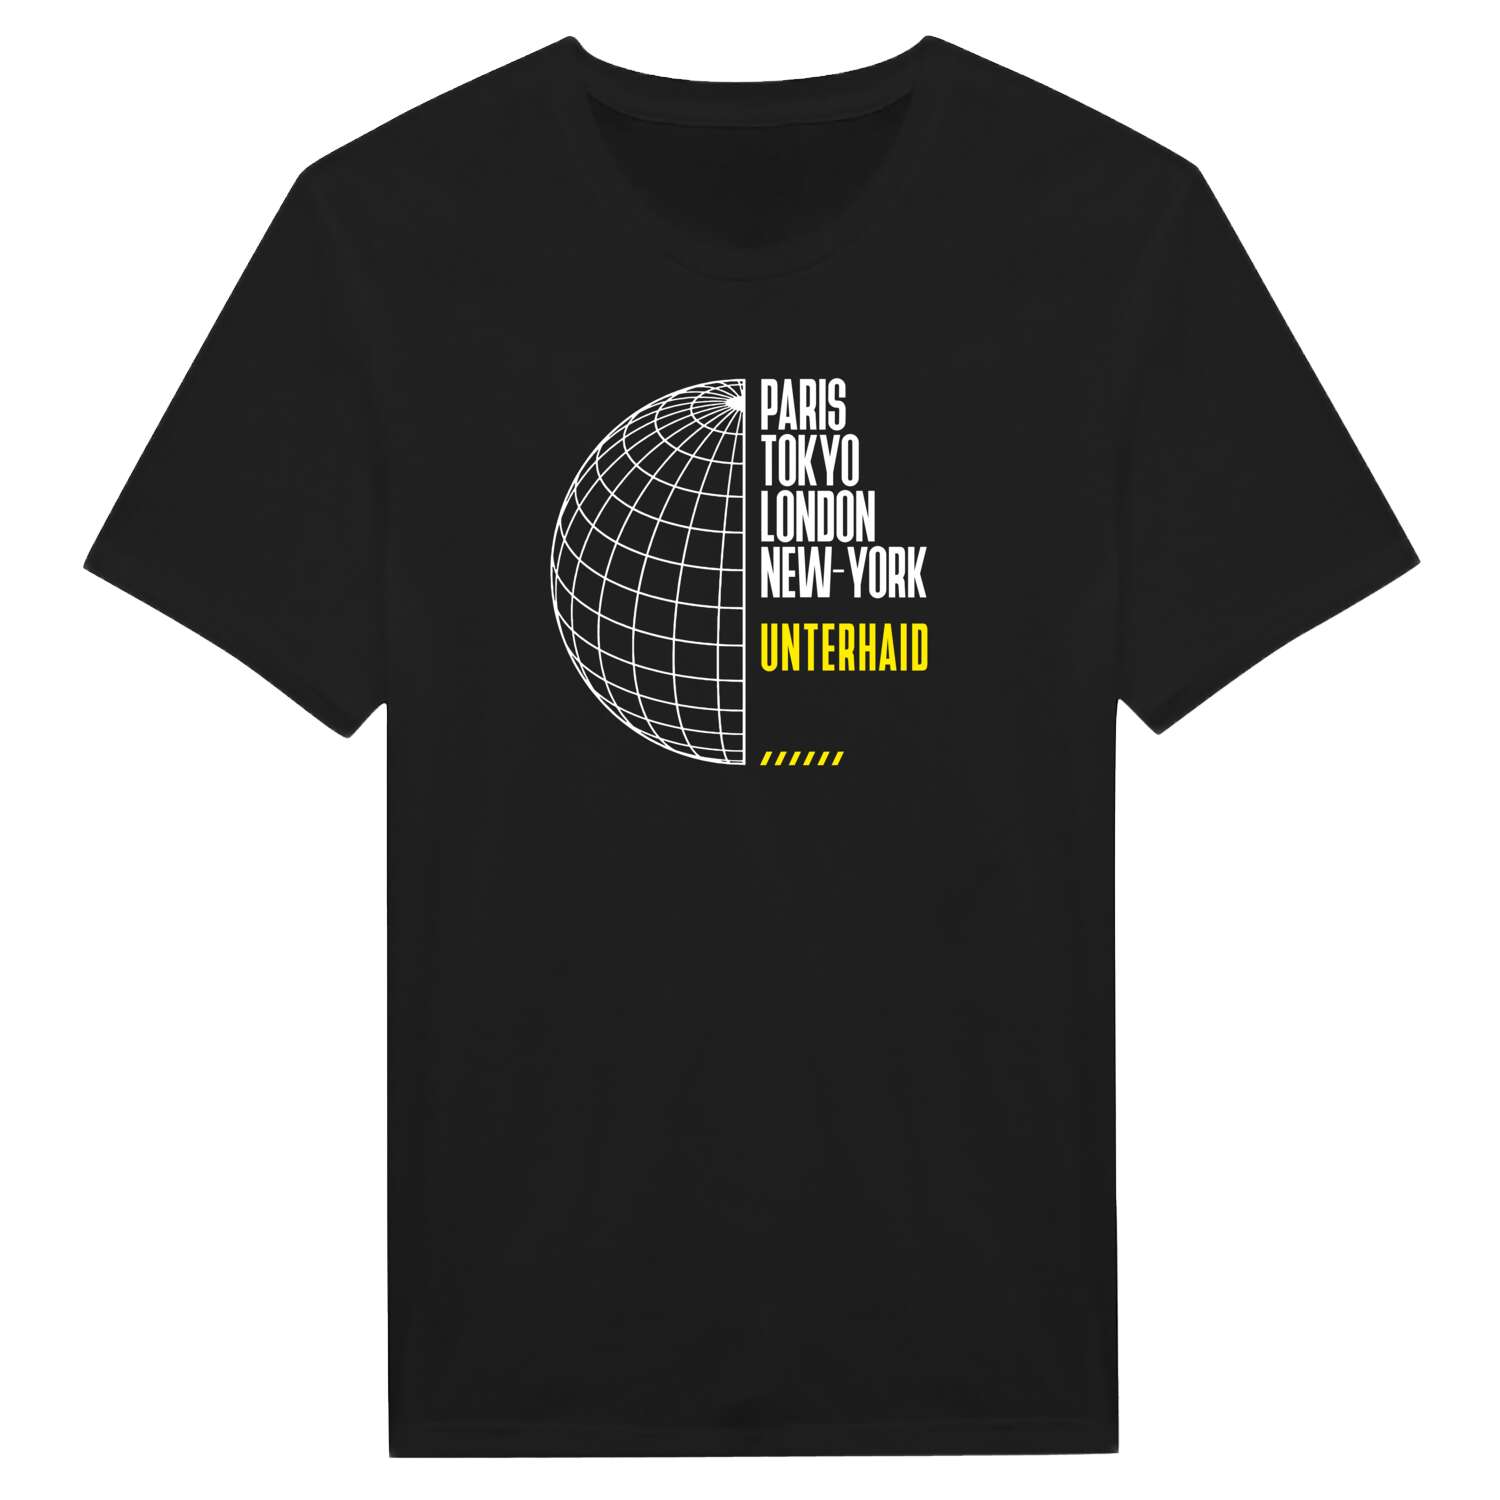 Unterhaid T-Shirt »Paris Tokyo London«